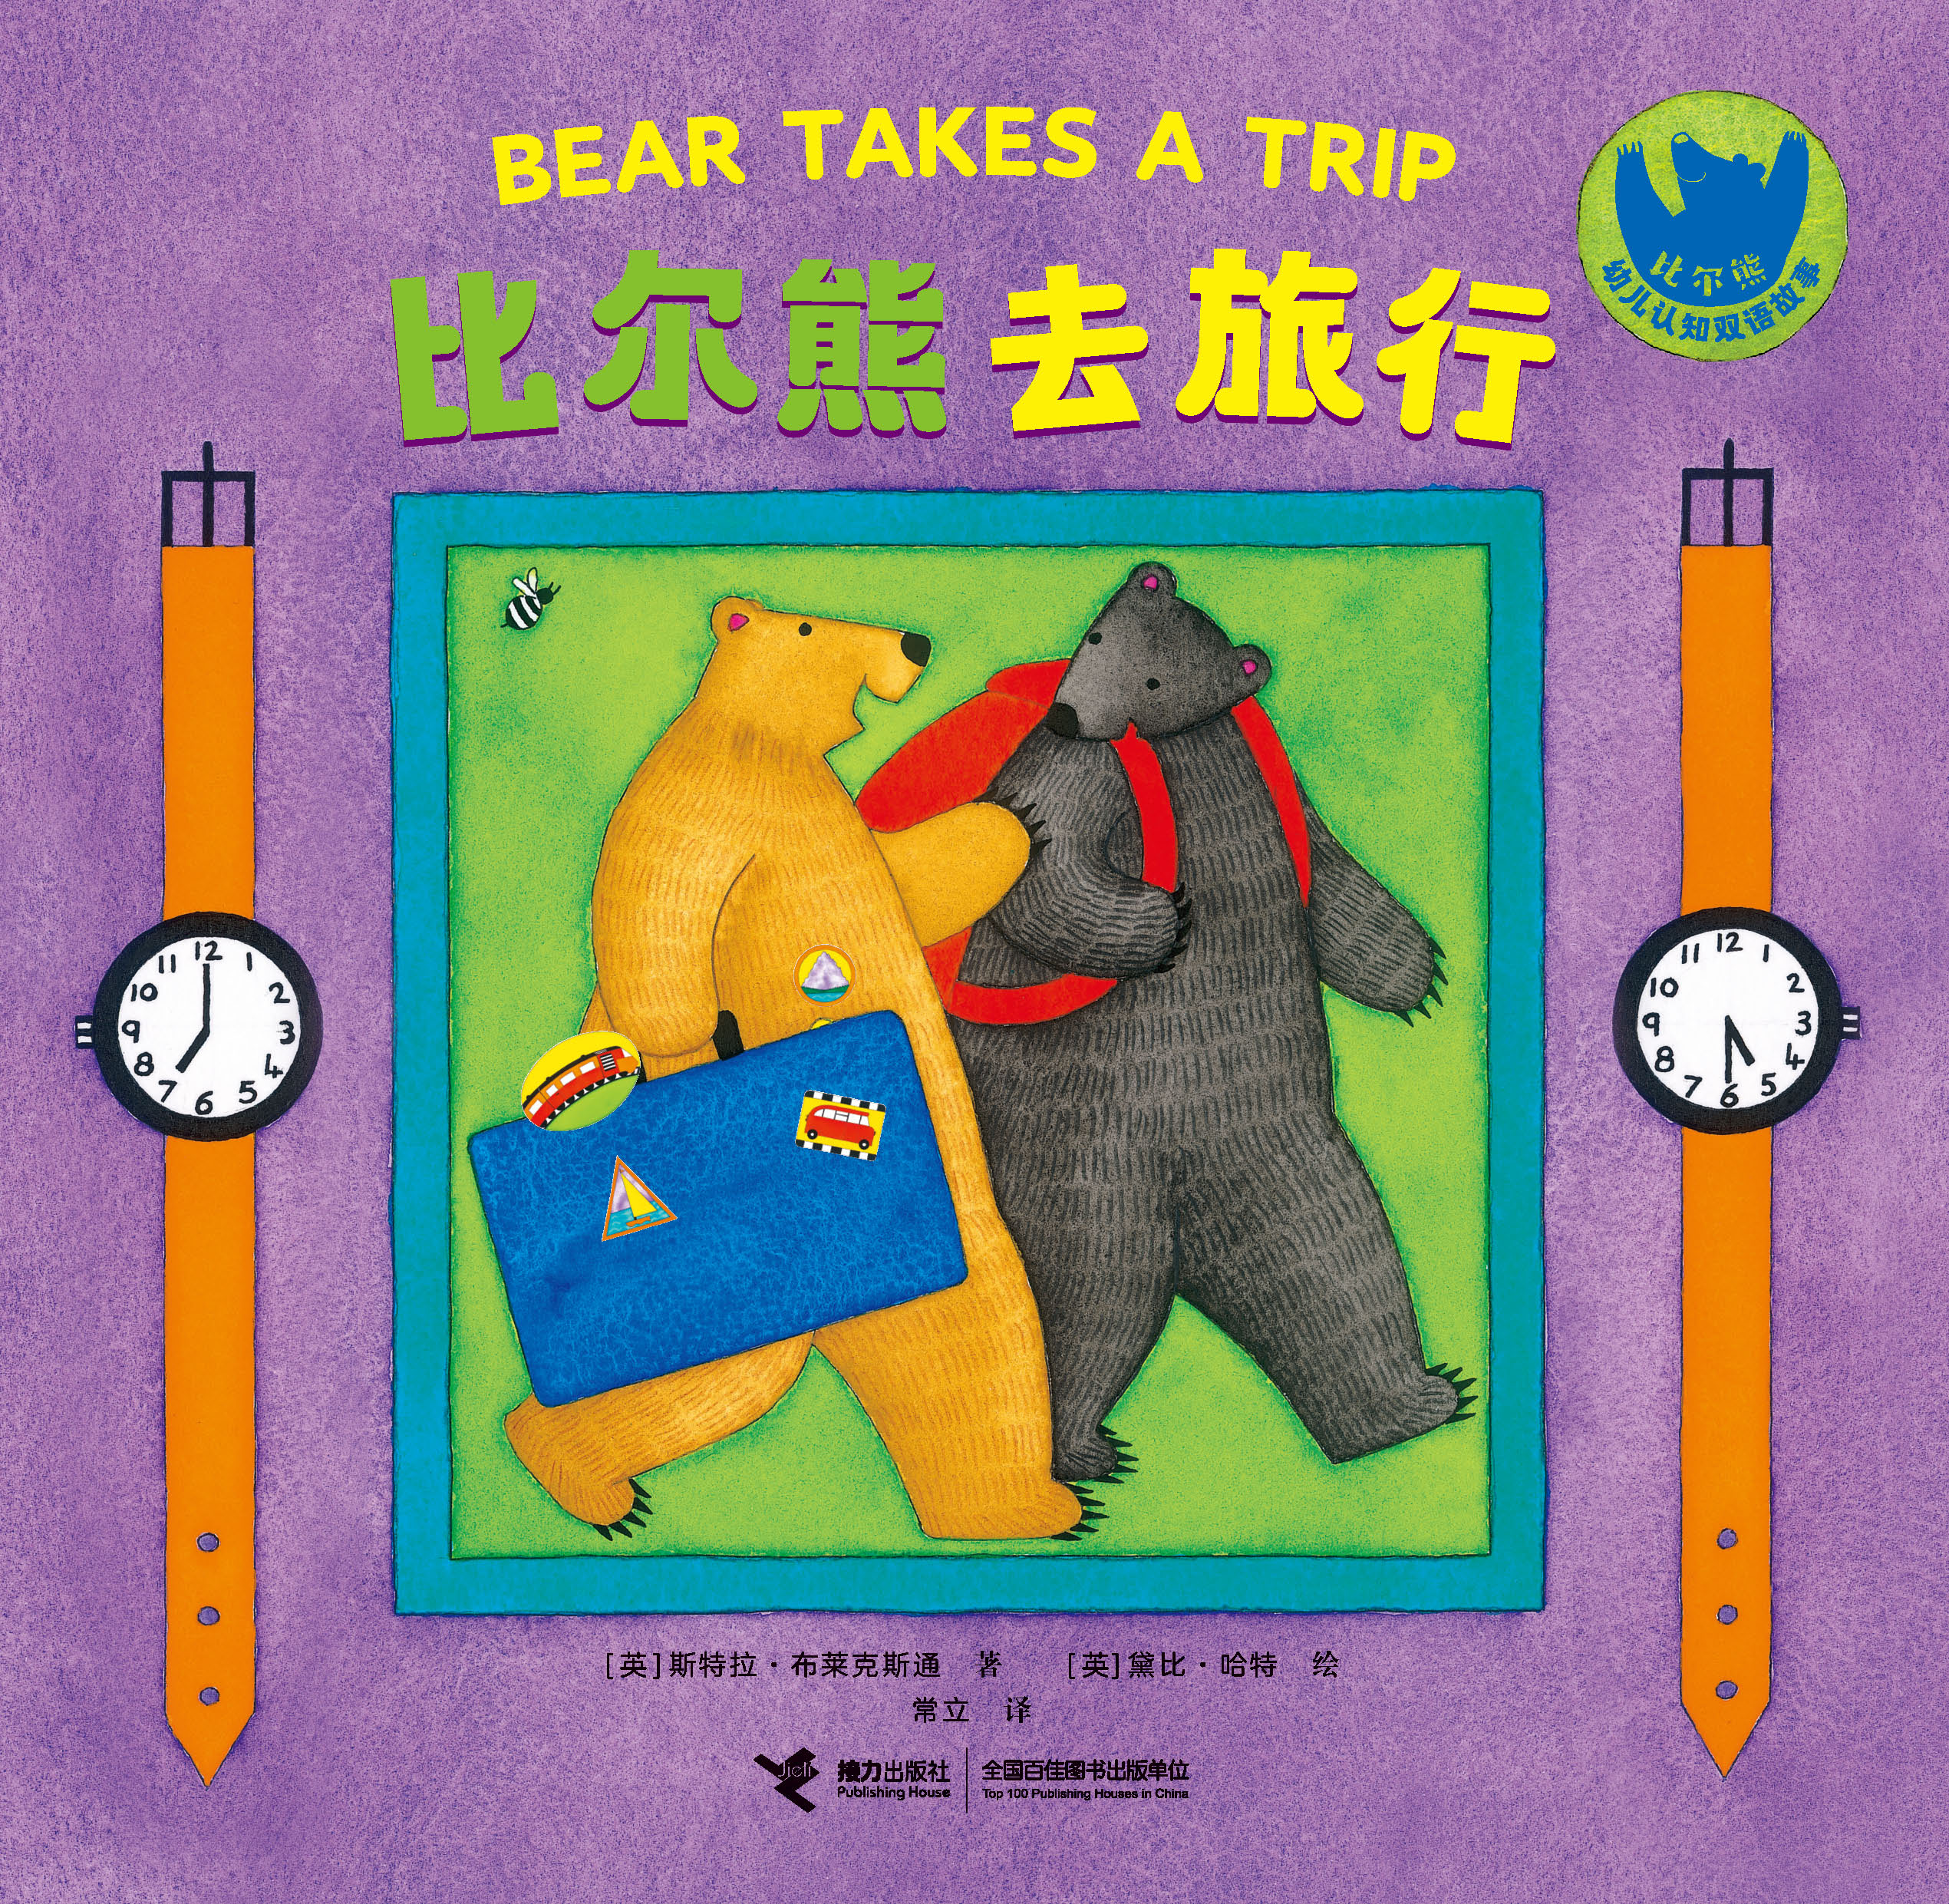 比尔熊幼儿认知双语故事:比尔熊幼儿认知双语故事.比尔熊去旅行：汉英对照